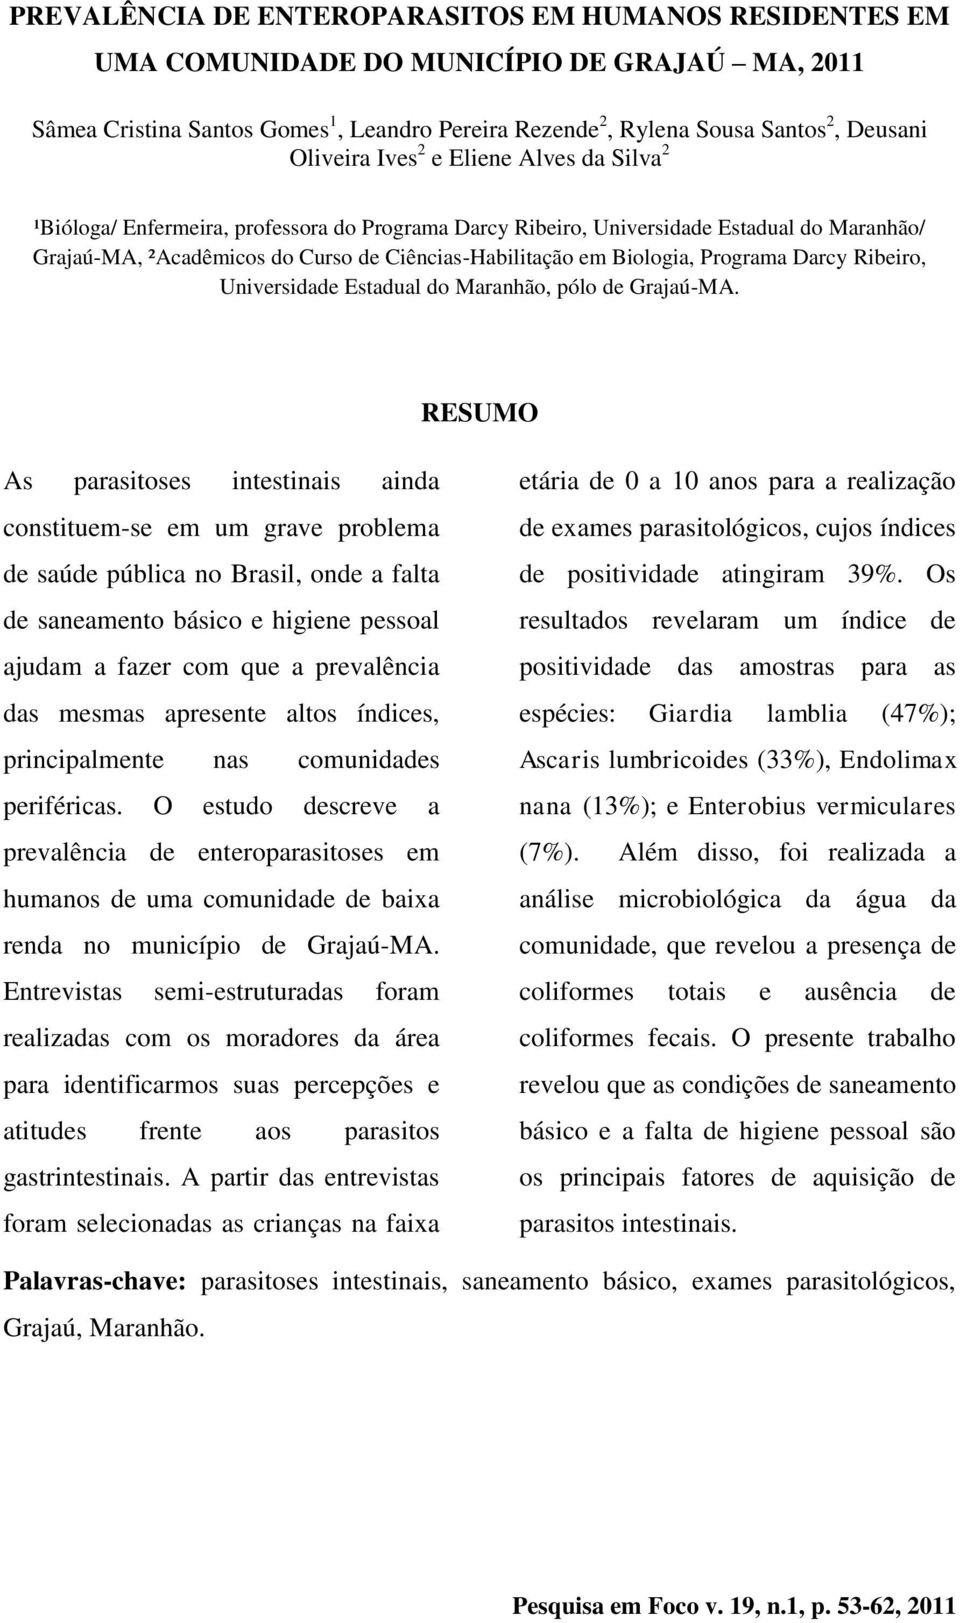 Biologia, Programa Darcy Ribeiro, Universidade Estadual do Maranhão, pólo de Grajaú-MA.